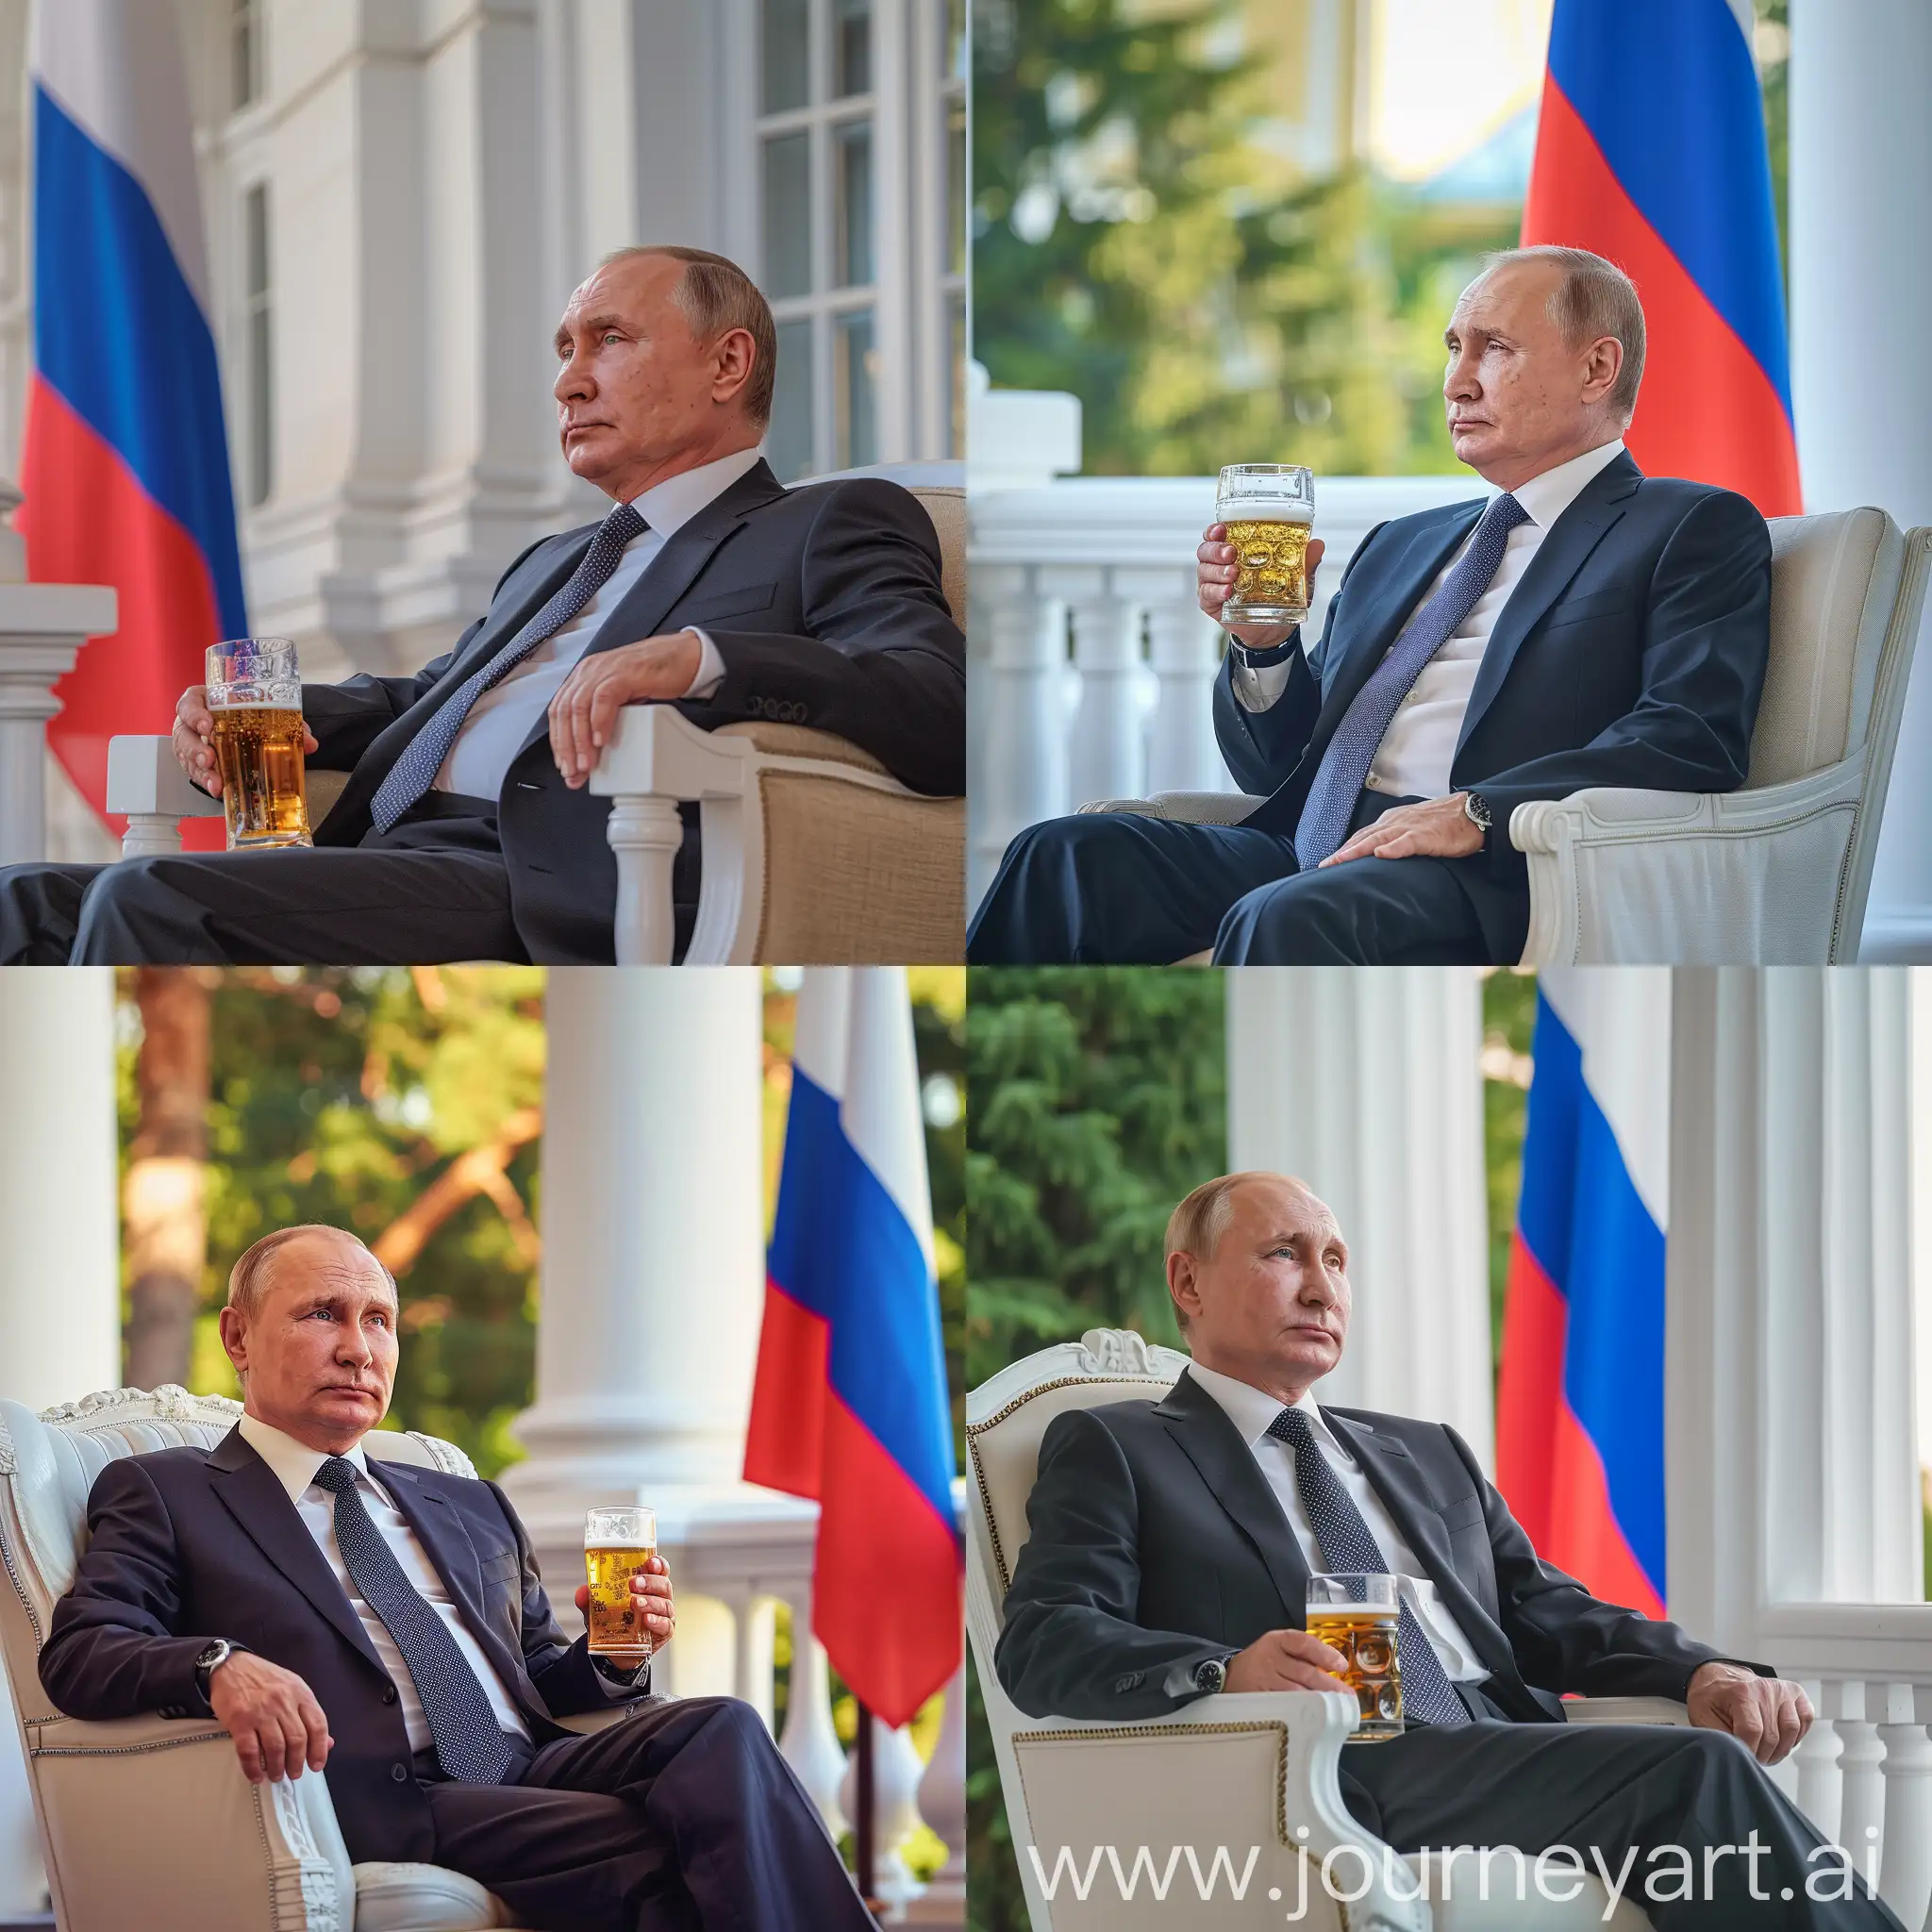 Владимир Путин сидит в кресле на балконе своего белого особняка, в деловом костюме, в руке бокал с пивом, 8к, задний фон флаг россии, супер детализация, острый фокус, летнее время года, профессиональное освещение, крупный план, время суток рассвет, HDR